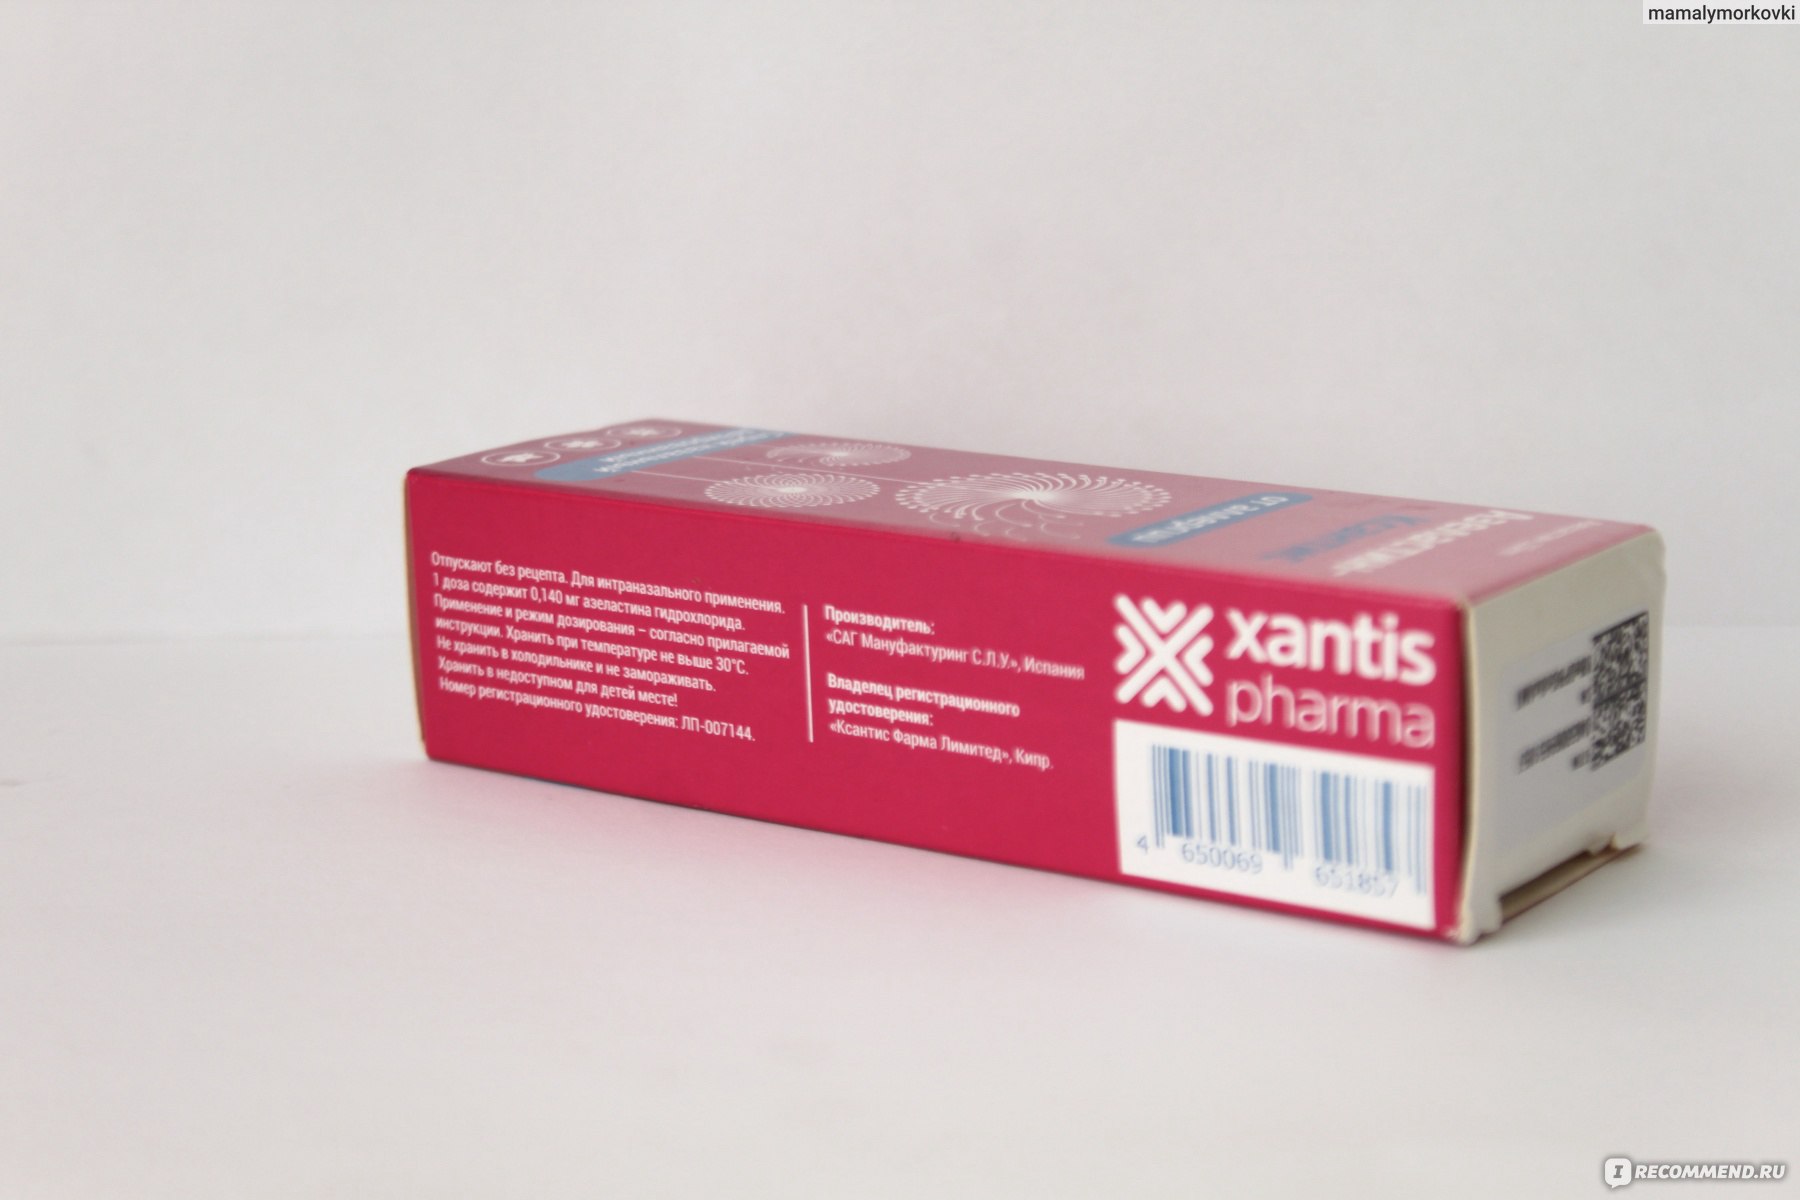 Антигистаминное средство Азеластин-Ксантис - «Стоп аллергия» | отзывы